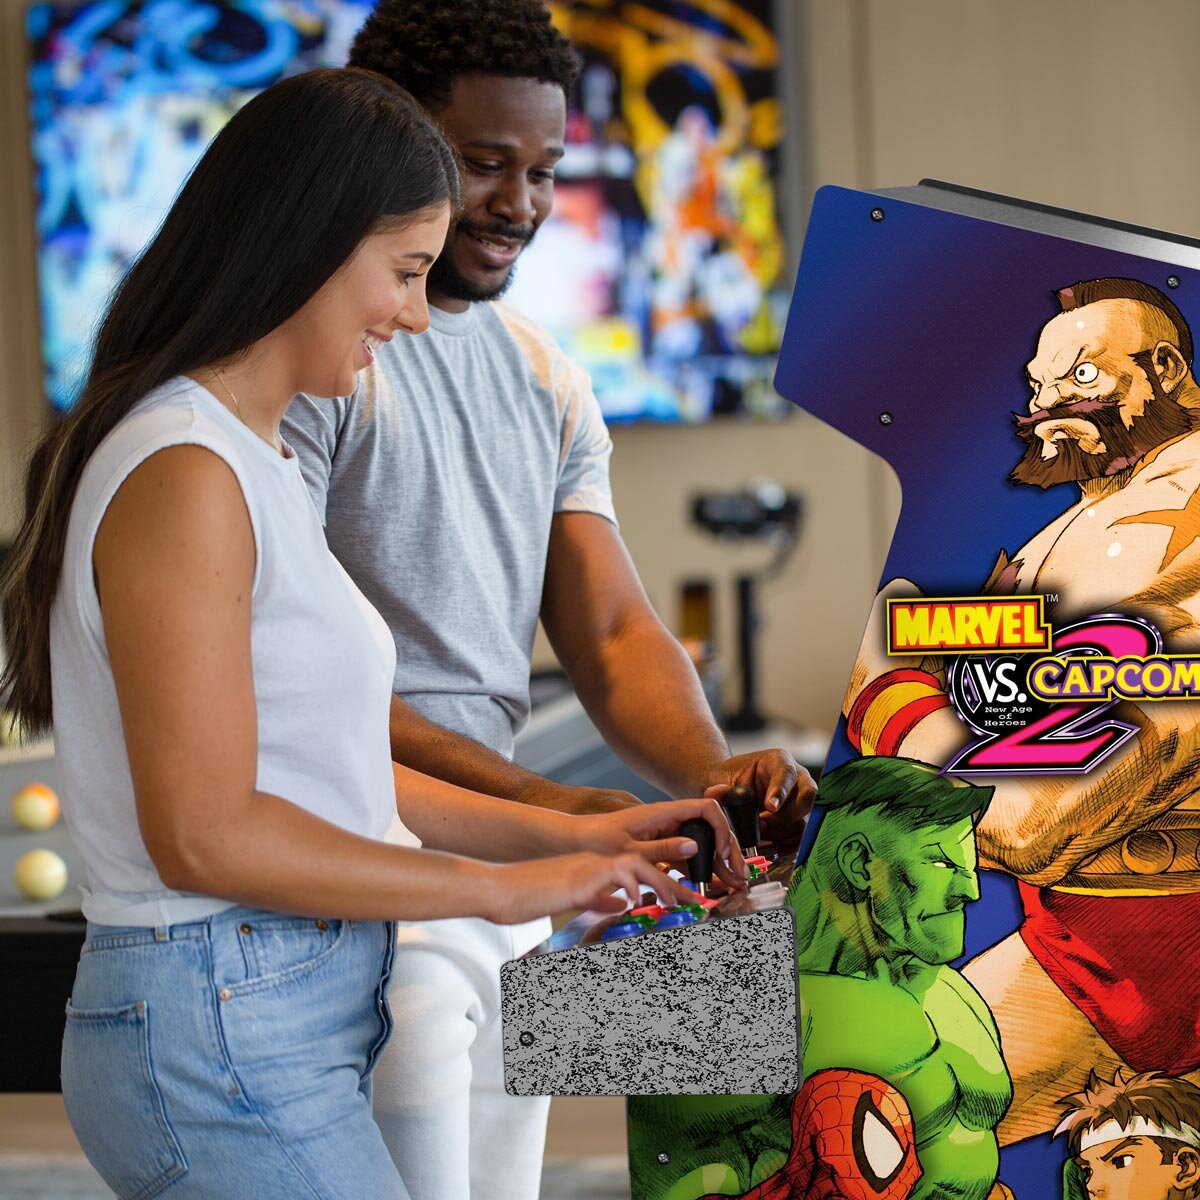 Arcade1UP 5ft (154cm) Marvel vs Capcom 2 Arcade Cabinet